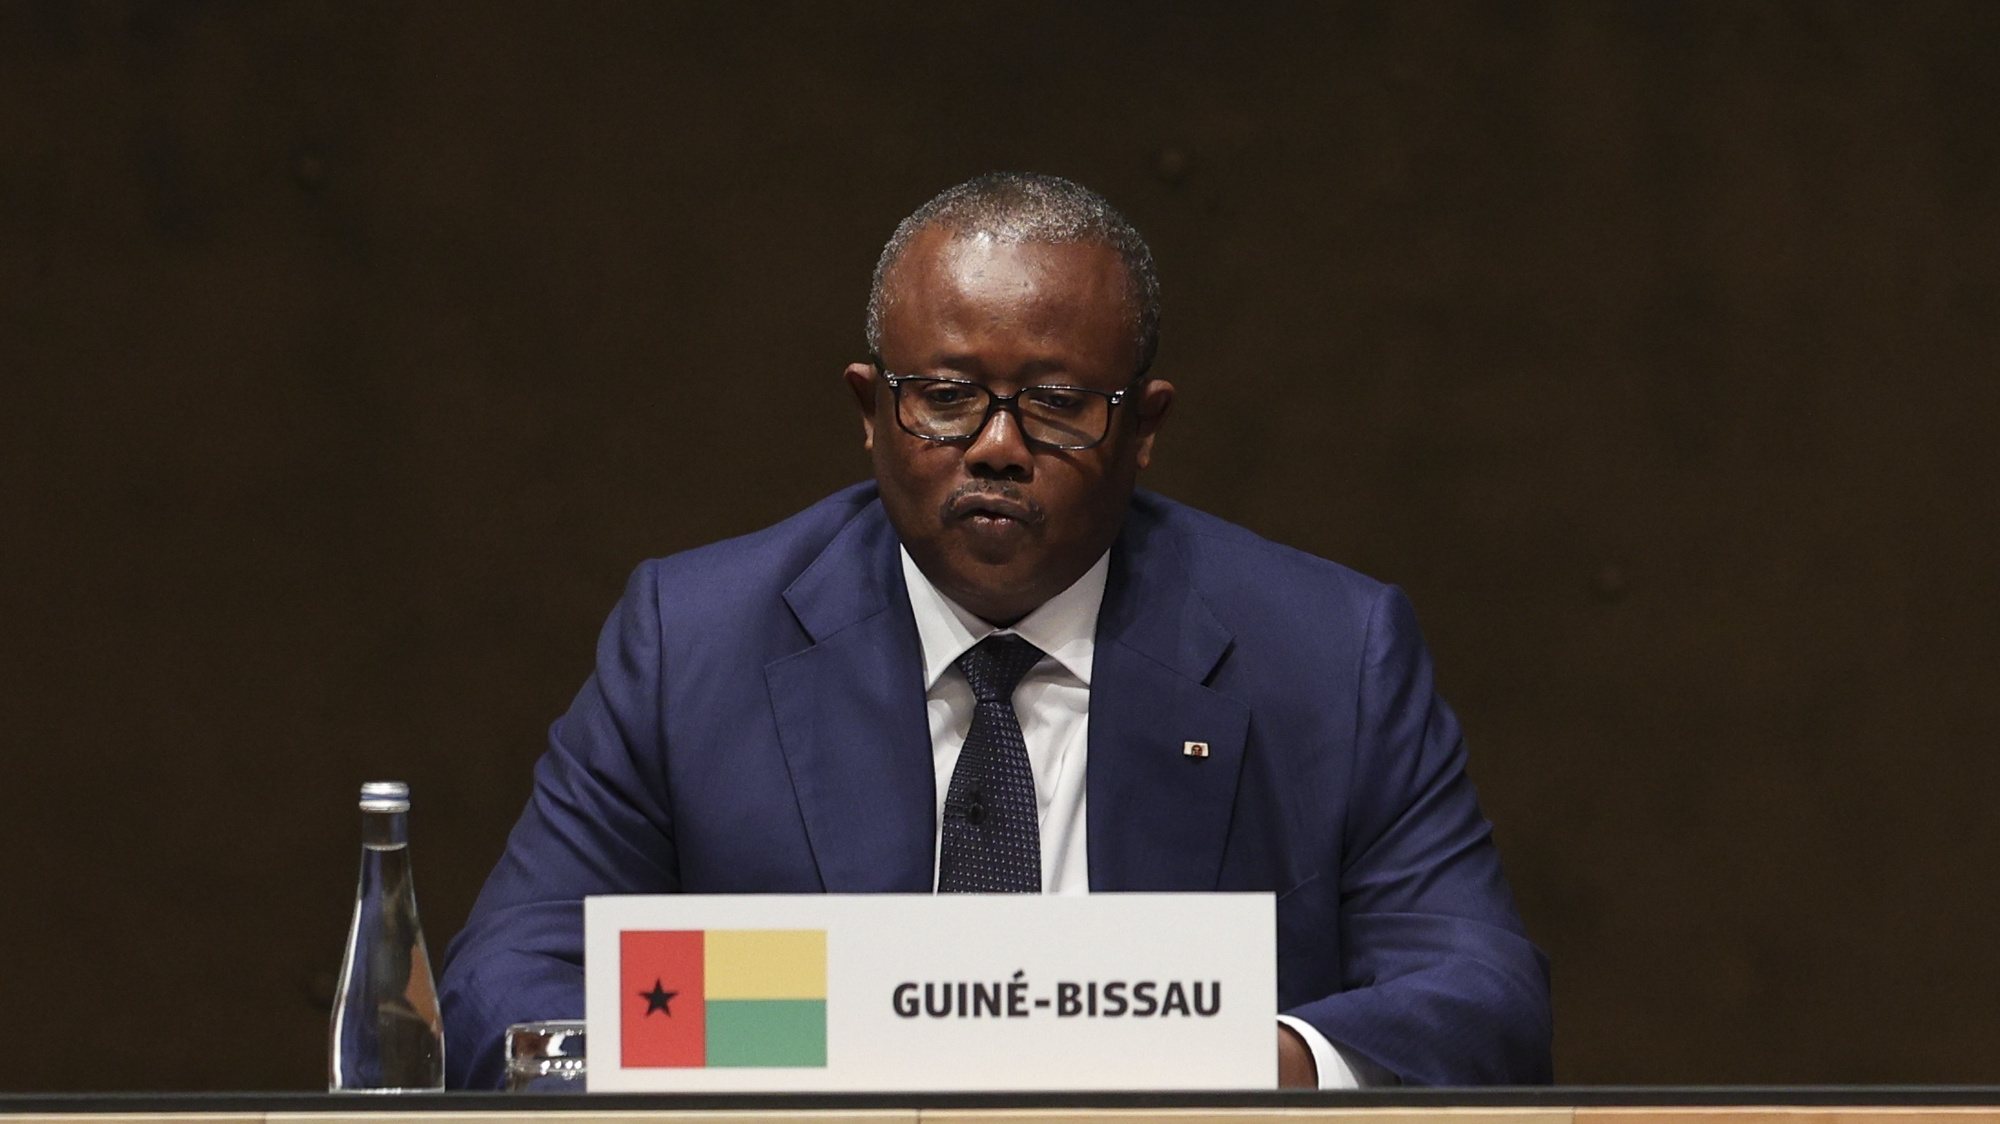 O Presidente da República da Guiné-Bissau, Umaro Sissoco Embalo, intervém na sessão comemorativa do 50º aniversário do 25 de abril de 1974, com os Chefes de Estado irmãos, cuja independência esteve ligada do 25 de abril em Lisboa, 25 de abril de 2024. MIGUEL A. LOPES/LUSA